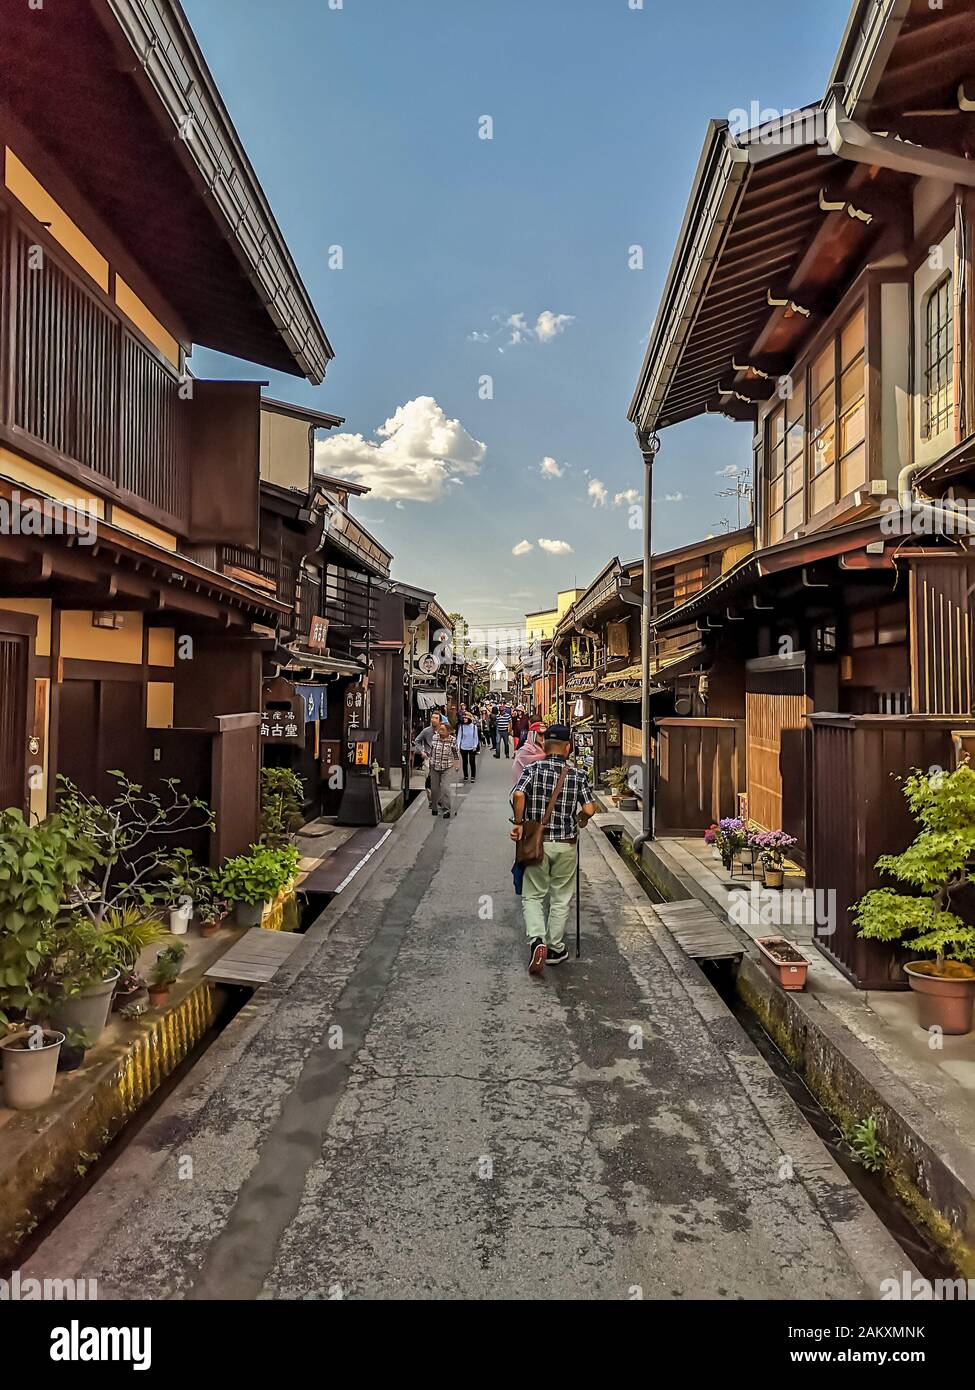 Takayama, GIAPPONE - MAGGIO 2019: Centro della città vecchia tradizionale di montagna giapponese Takayama nella prefettura di Gifu con autentici edifici in legno Foto Stock